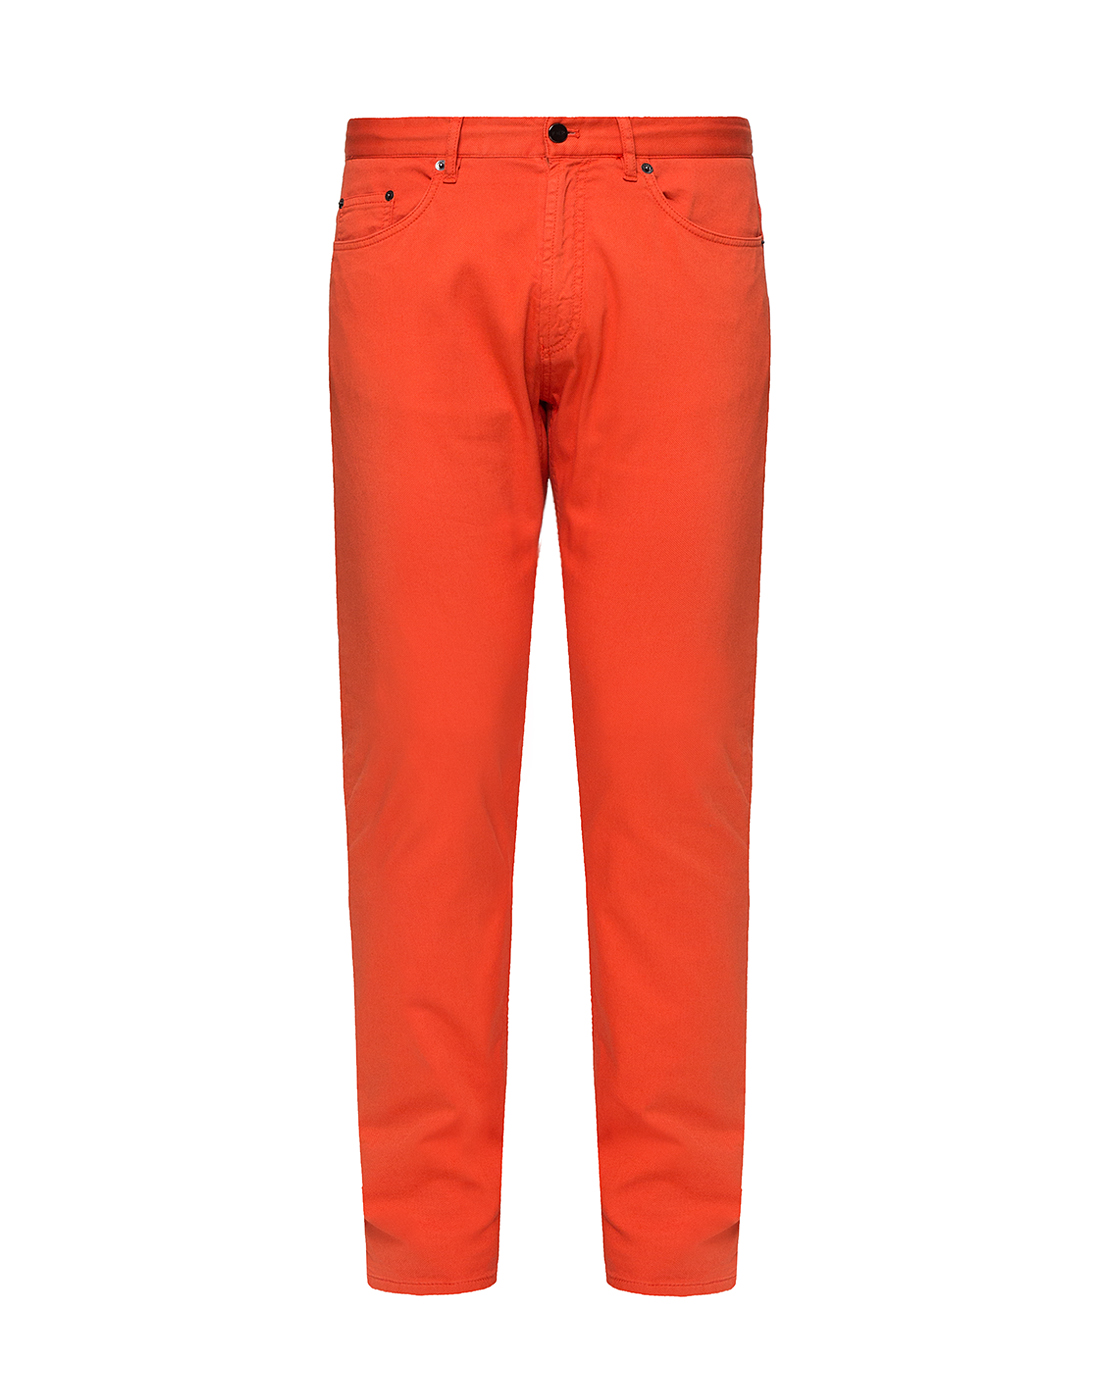 Мужские оранжевые джинсы Hiltl  S160041 382 86180-1